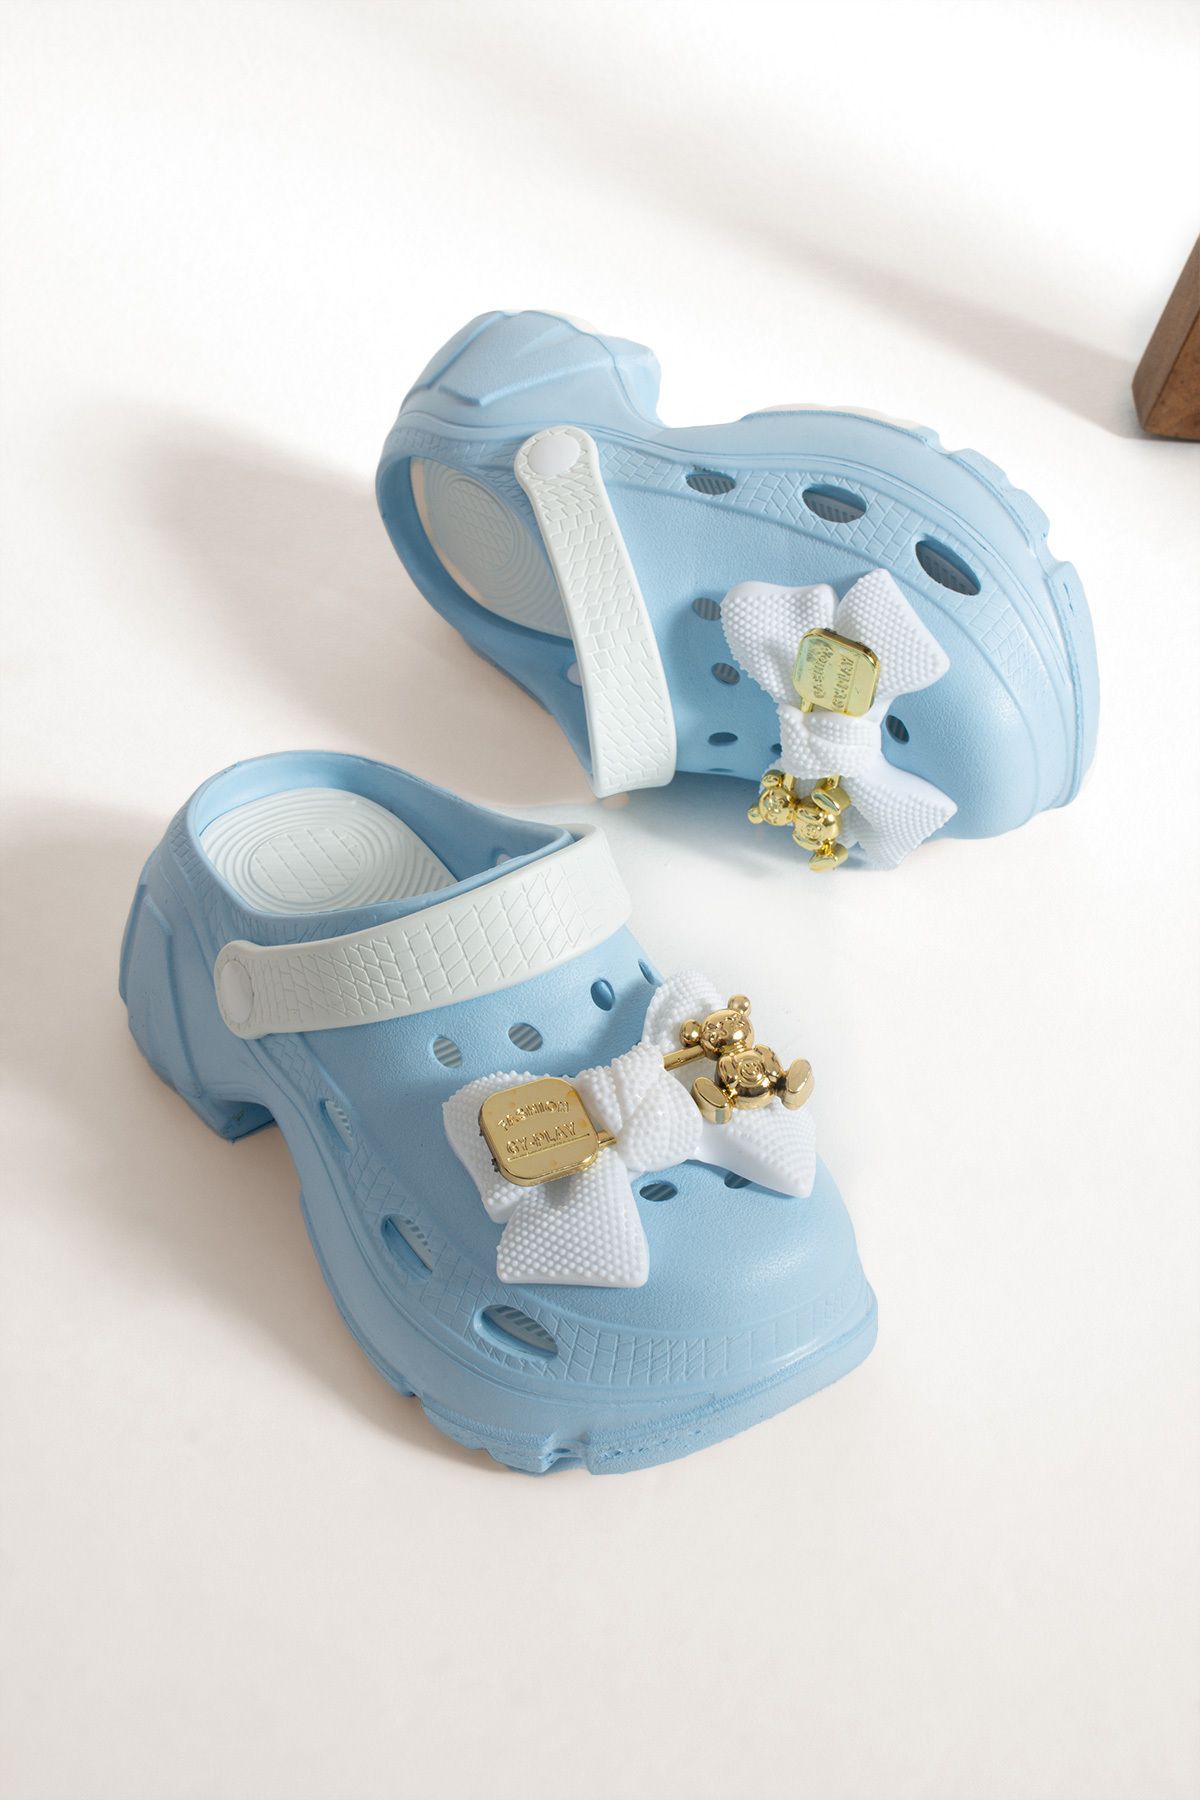 İnan Ayakkabı Beyaz/mavi Renk Ortopedik Iç Tabanlı Fiyon Toka Detaylı Sabo Sandalet & Terlik 6 Cm Taban